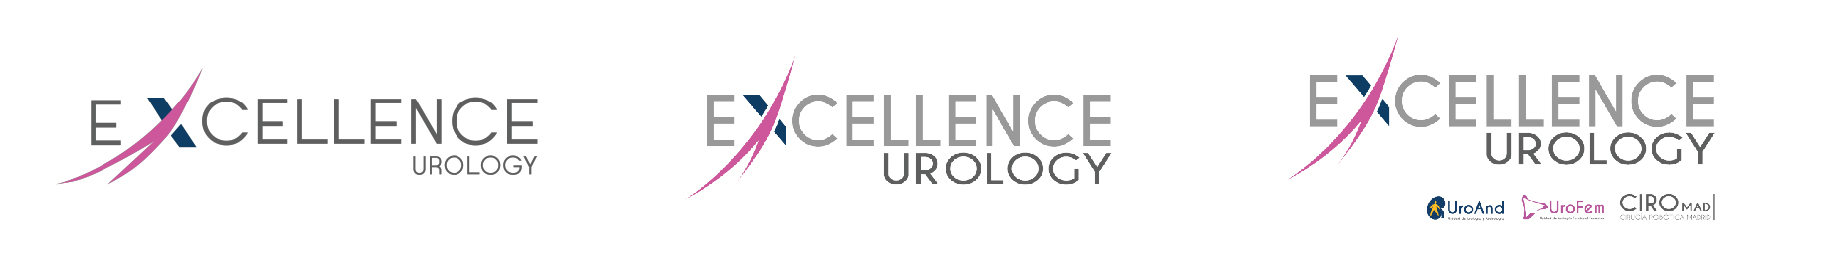 rebranding-logo-excellence-urology-agencia-t2k Mesa-de-trabajo-1